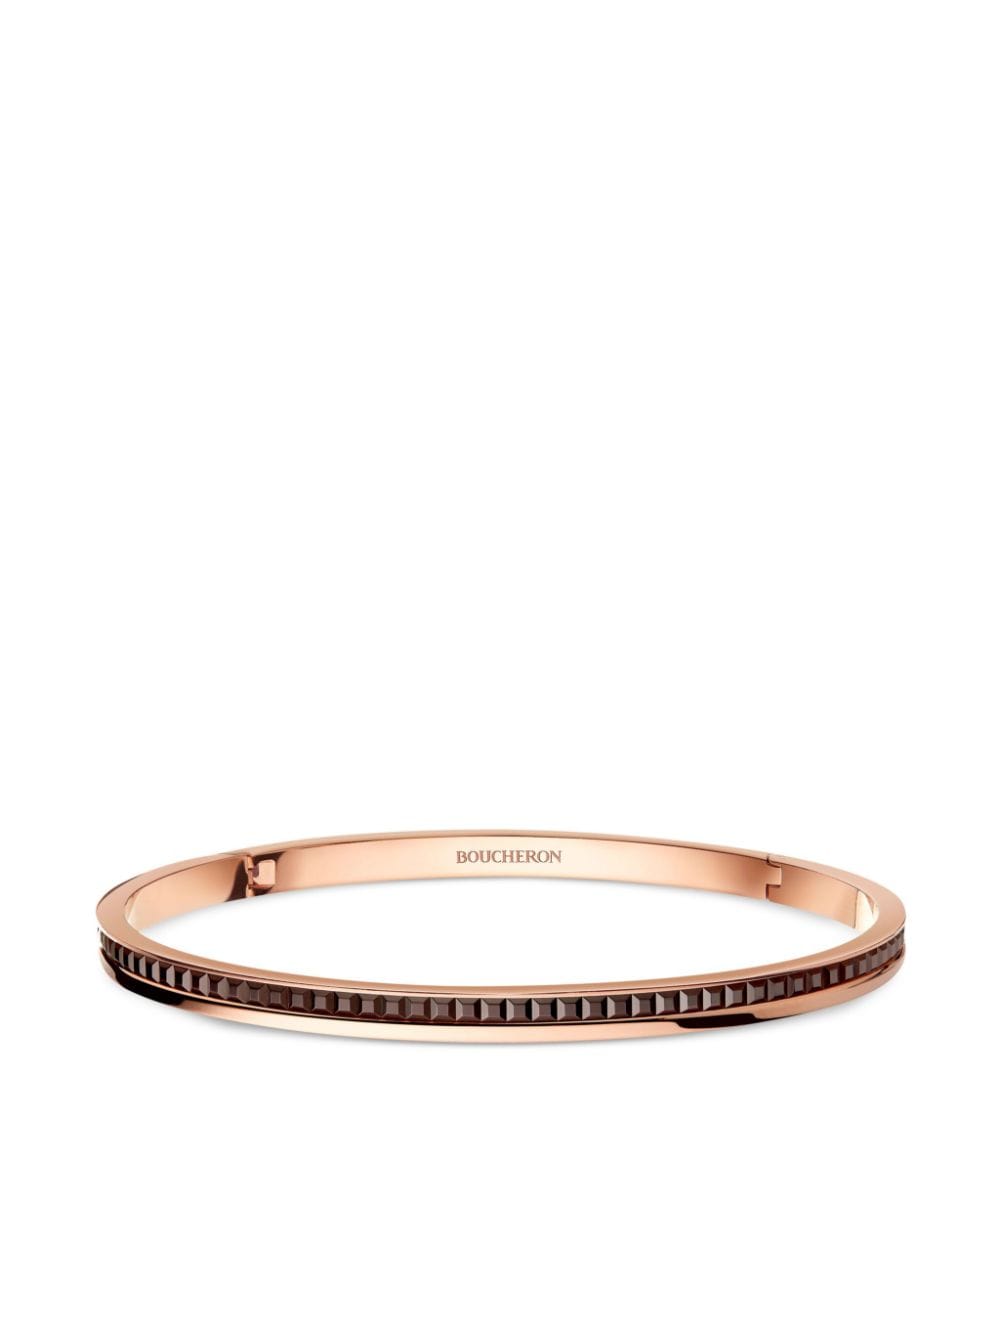 Boucheron 18K recycled rose gold Quatre Classique bangle bracelet - Pink von Boucheron